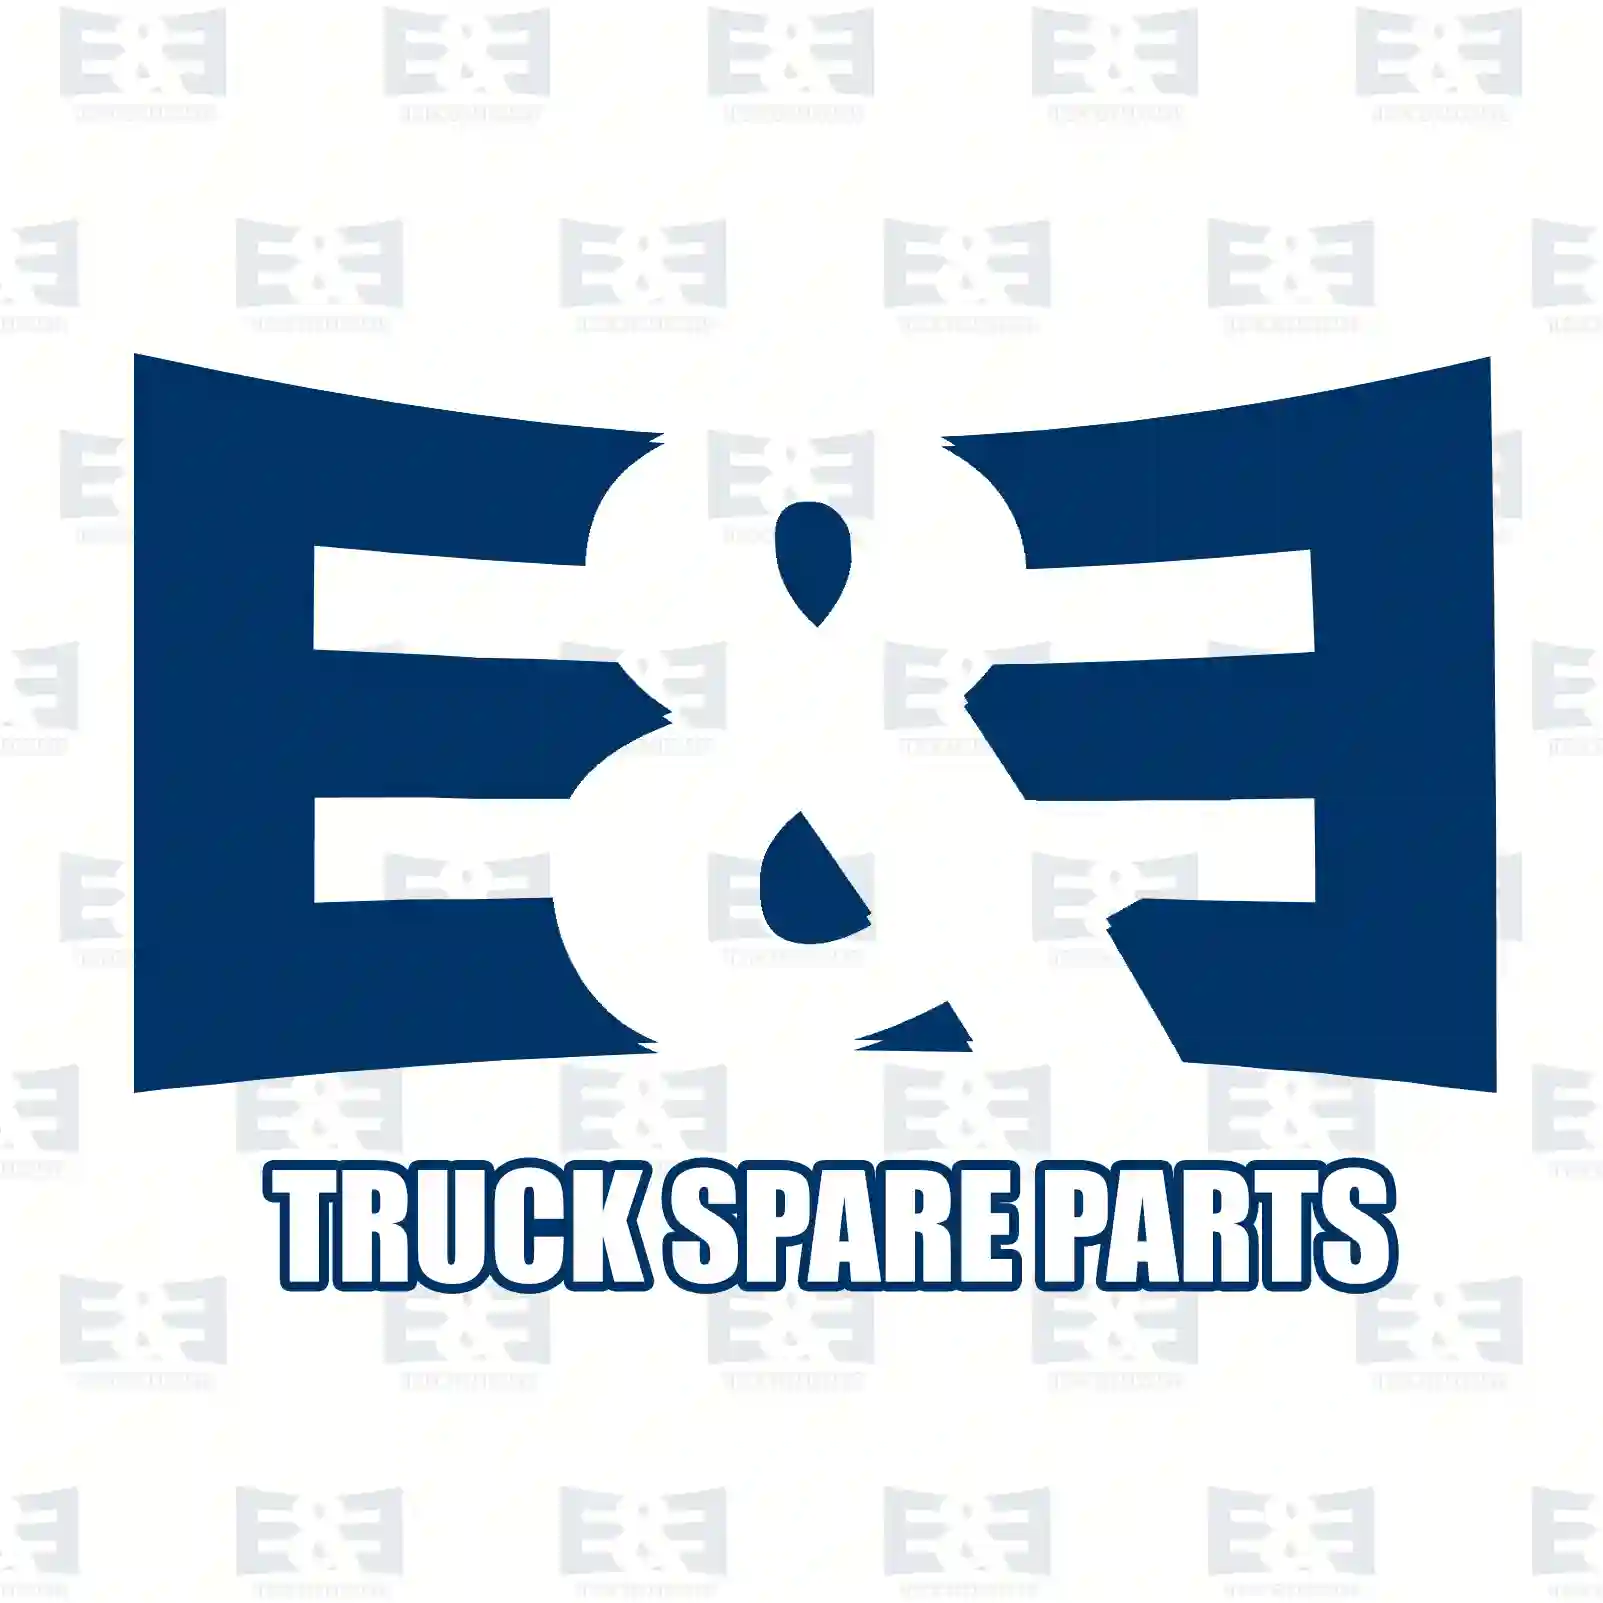 Main shaft, 2E2278797, 7420537204, 20366959, 20537204 ||  2E2278797 E&E Truck Spare Parts | Truck Spare Parts, Auotomotive Spare Parts Main shaft, 2E2278797, 7420537204, 20366959, 20537204 ||  2E2278797 E&E Truck Spare Parts | Truck Spare Parts, Auotomotive Spare Parts